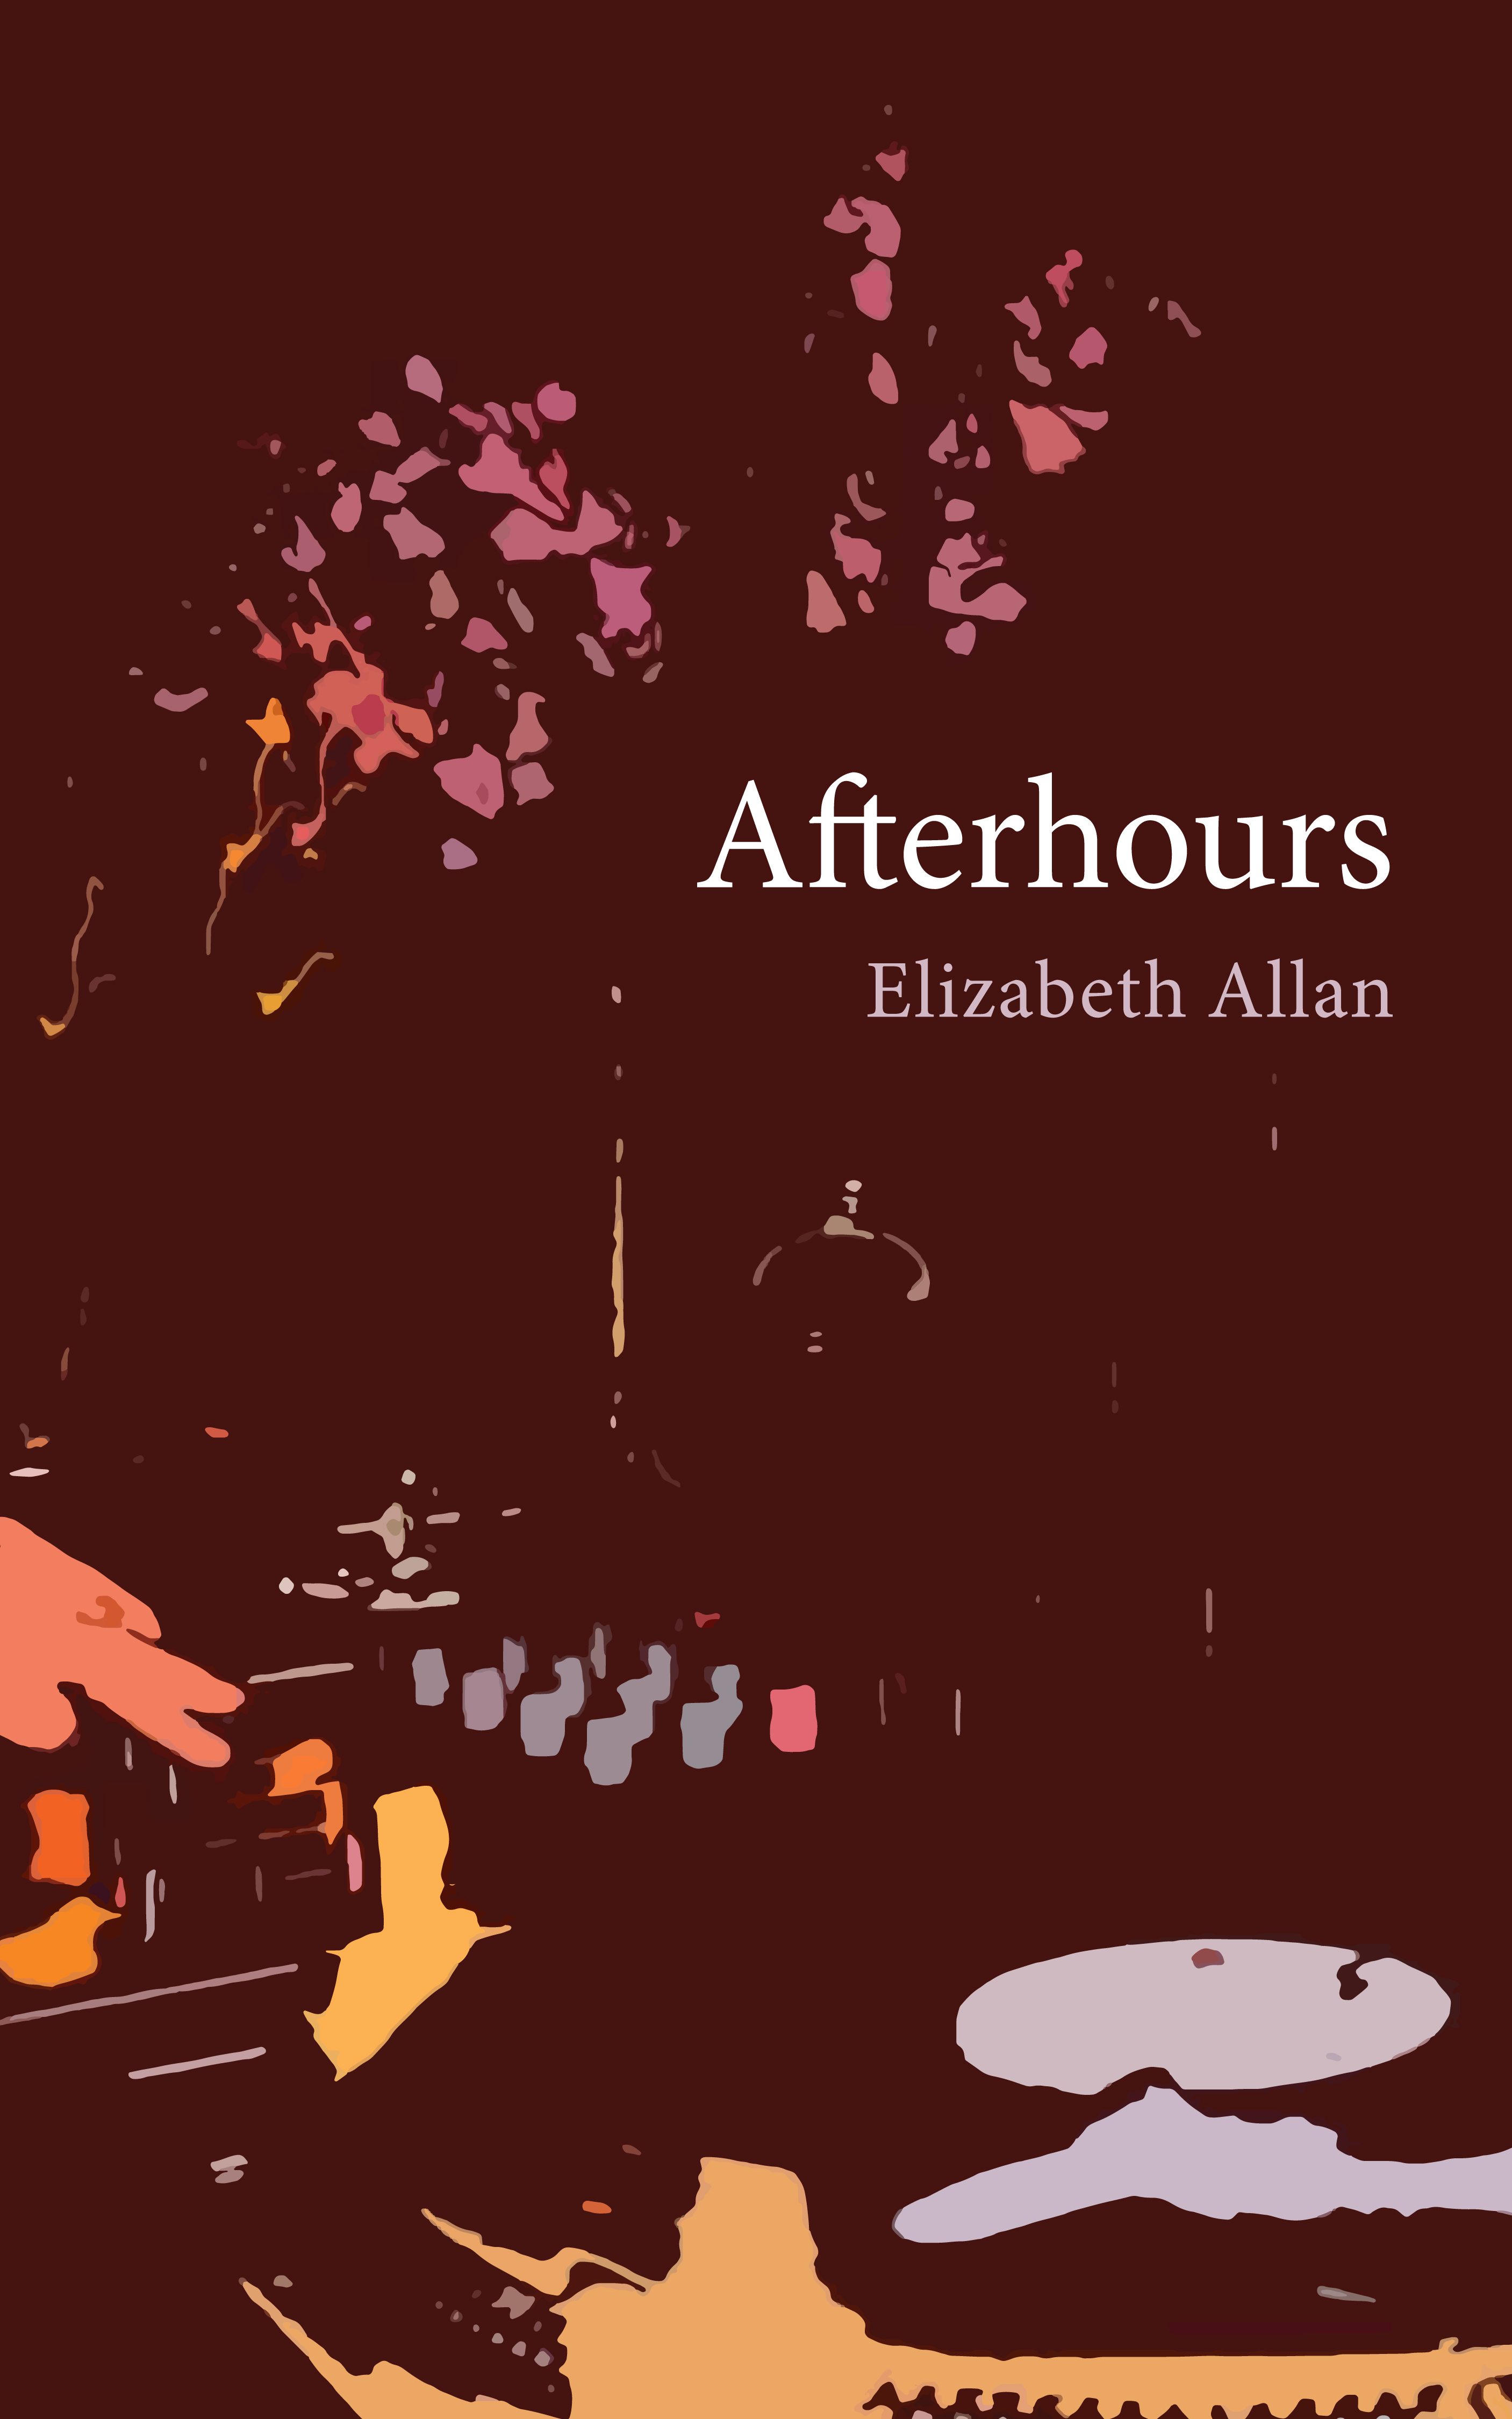 Afterhours by Elizabeth Allan